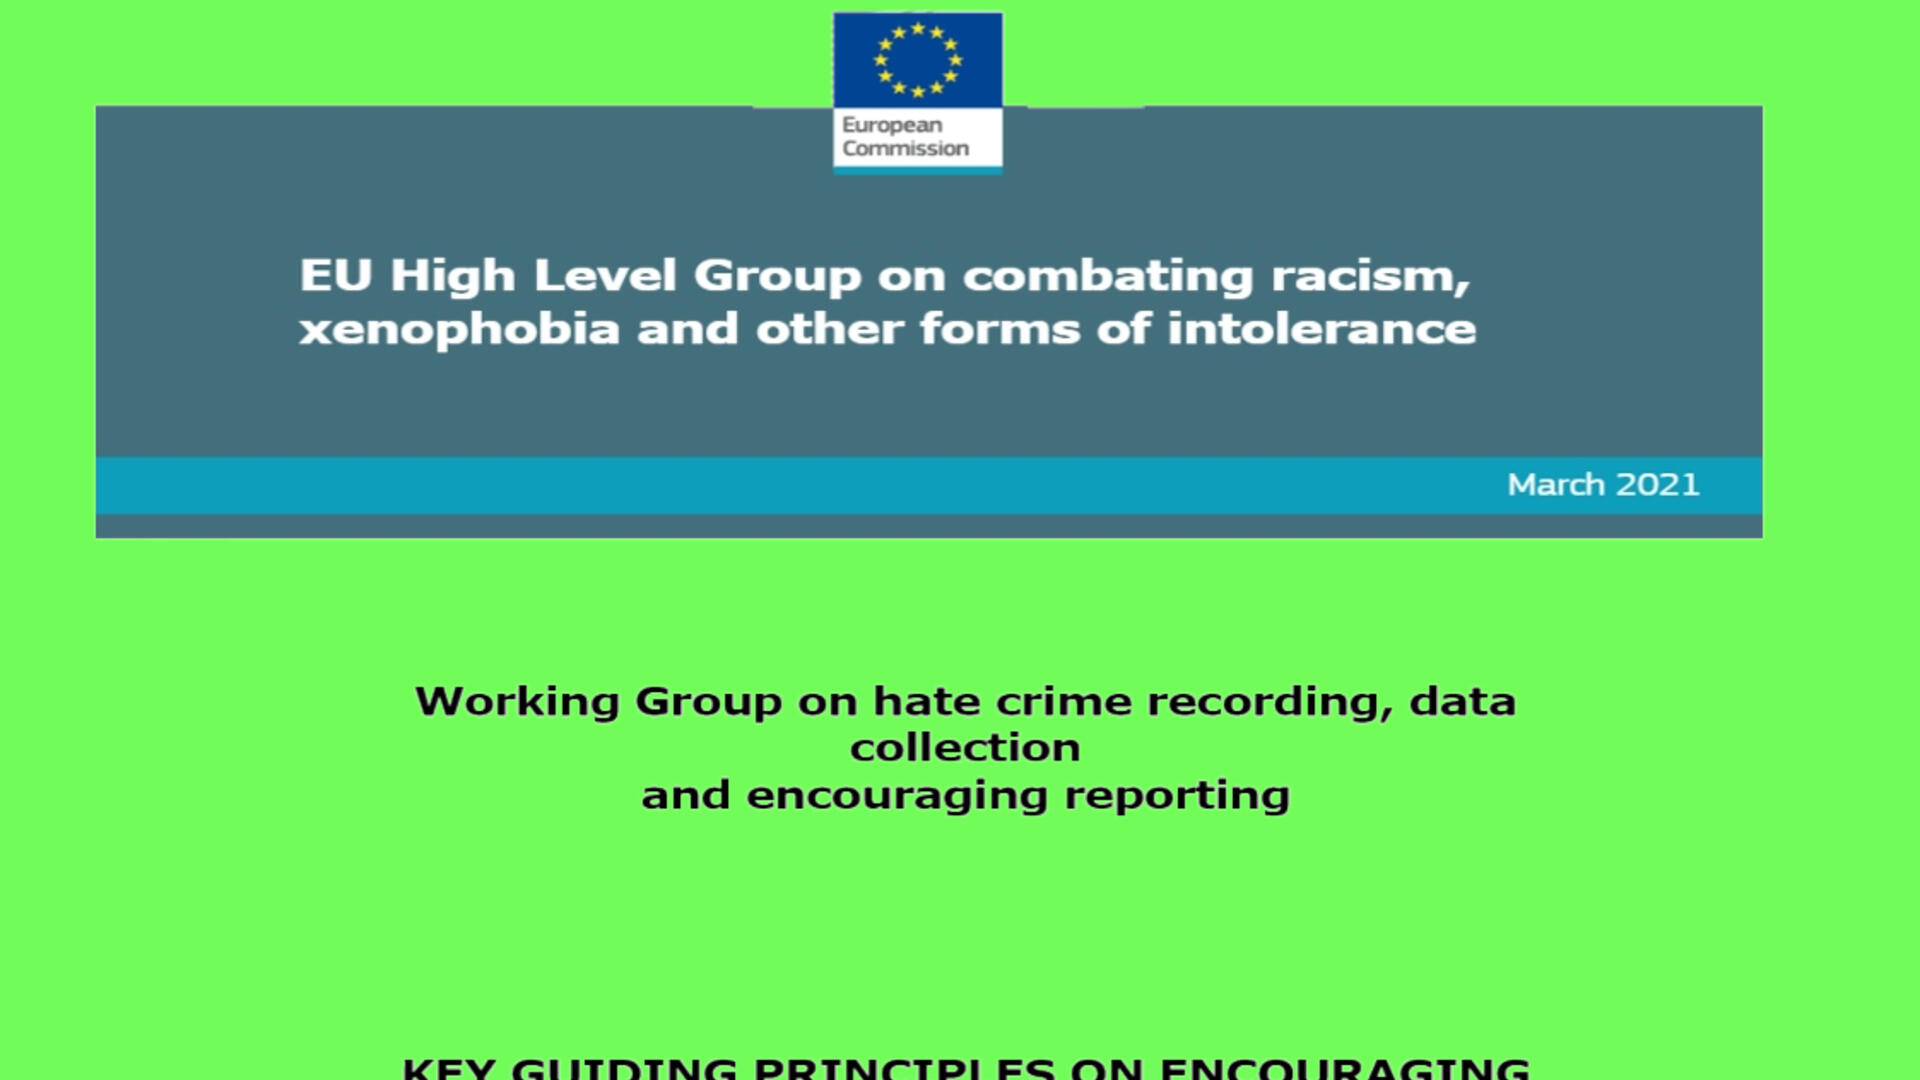 (ingekleurd) (deel van de) voorkant van het Hate Crime report